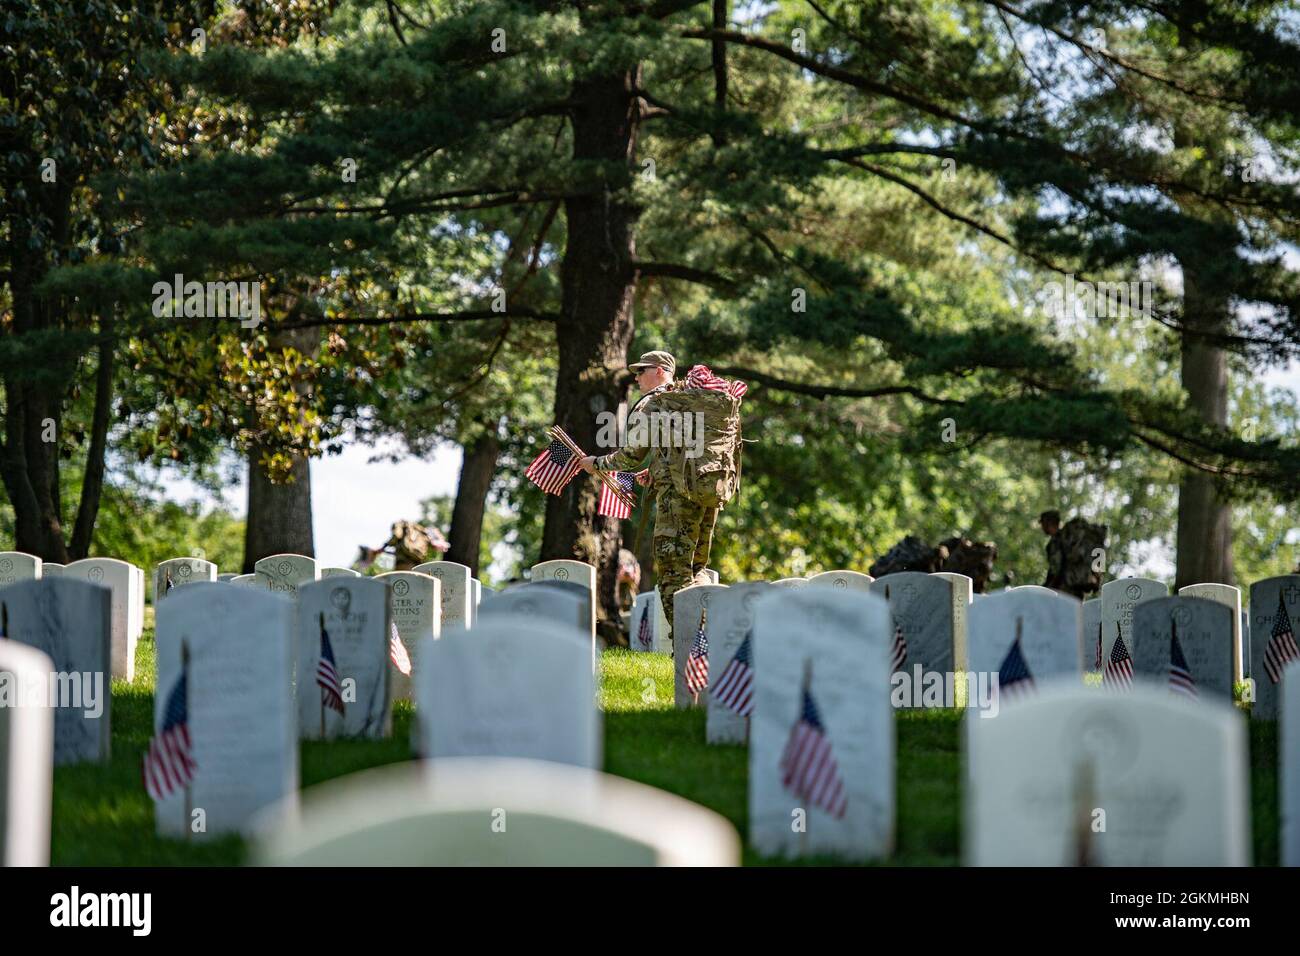 Les soldats de l'armée américaine 3d U.S. Infantry Regiment (The Old Guard), ainsi que les membres de service de toutes les branches de service des forces armées, placent plus de 265,000 drapeaux américains sur chaque tombe, colonne de cour de columbarium et colonne murale de niche dans le cadre de Flags-in au cimetière national d'Arlington, Arlington, Virginie, le 27 mai 2021. Depuis plus de 50 ans, les soldats de la vieille garde honorent les héros militaires tombés de notre pays en plaçant des drapeaux américains sur les tombes des militaires enterrés au cimetière national d'Arlington et au cimetière national des soldats et des aviateurs des États-Unis juste avant t Banque D'Images